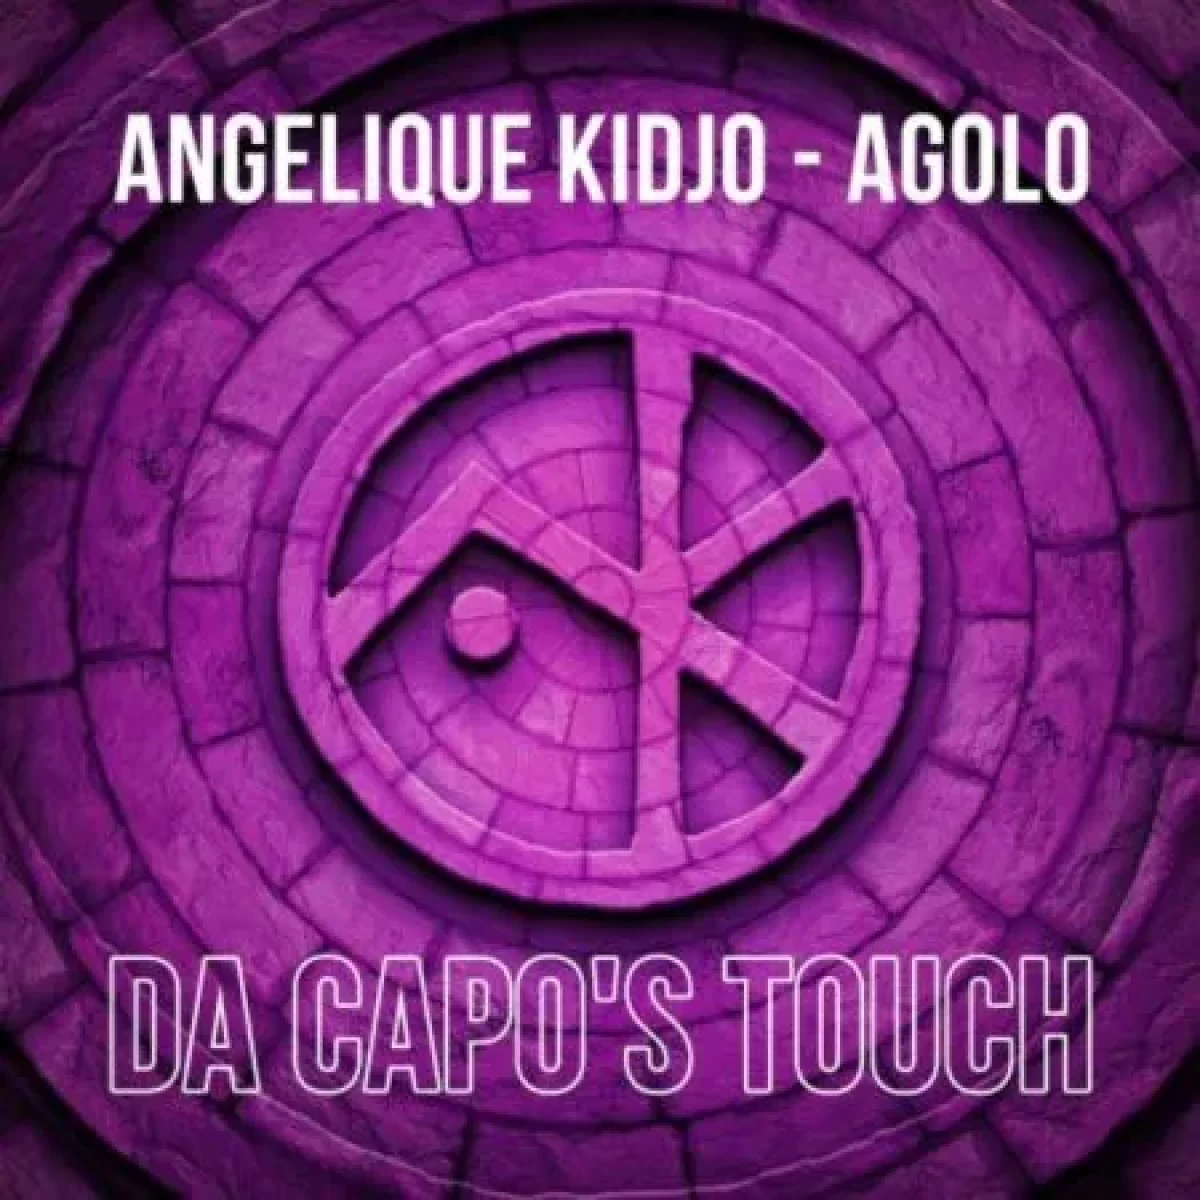 Angelique Kidjo – Agolo (Da Capo’s Touch) 1